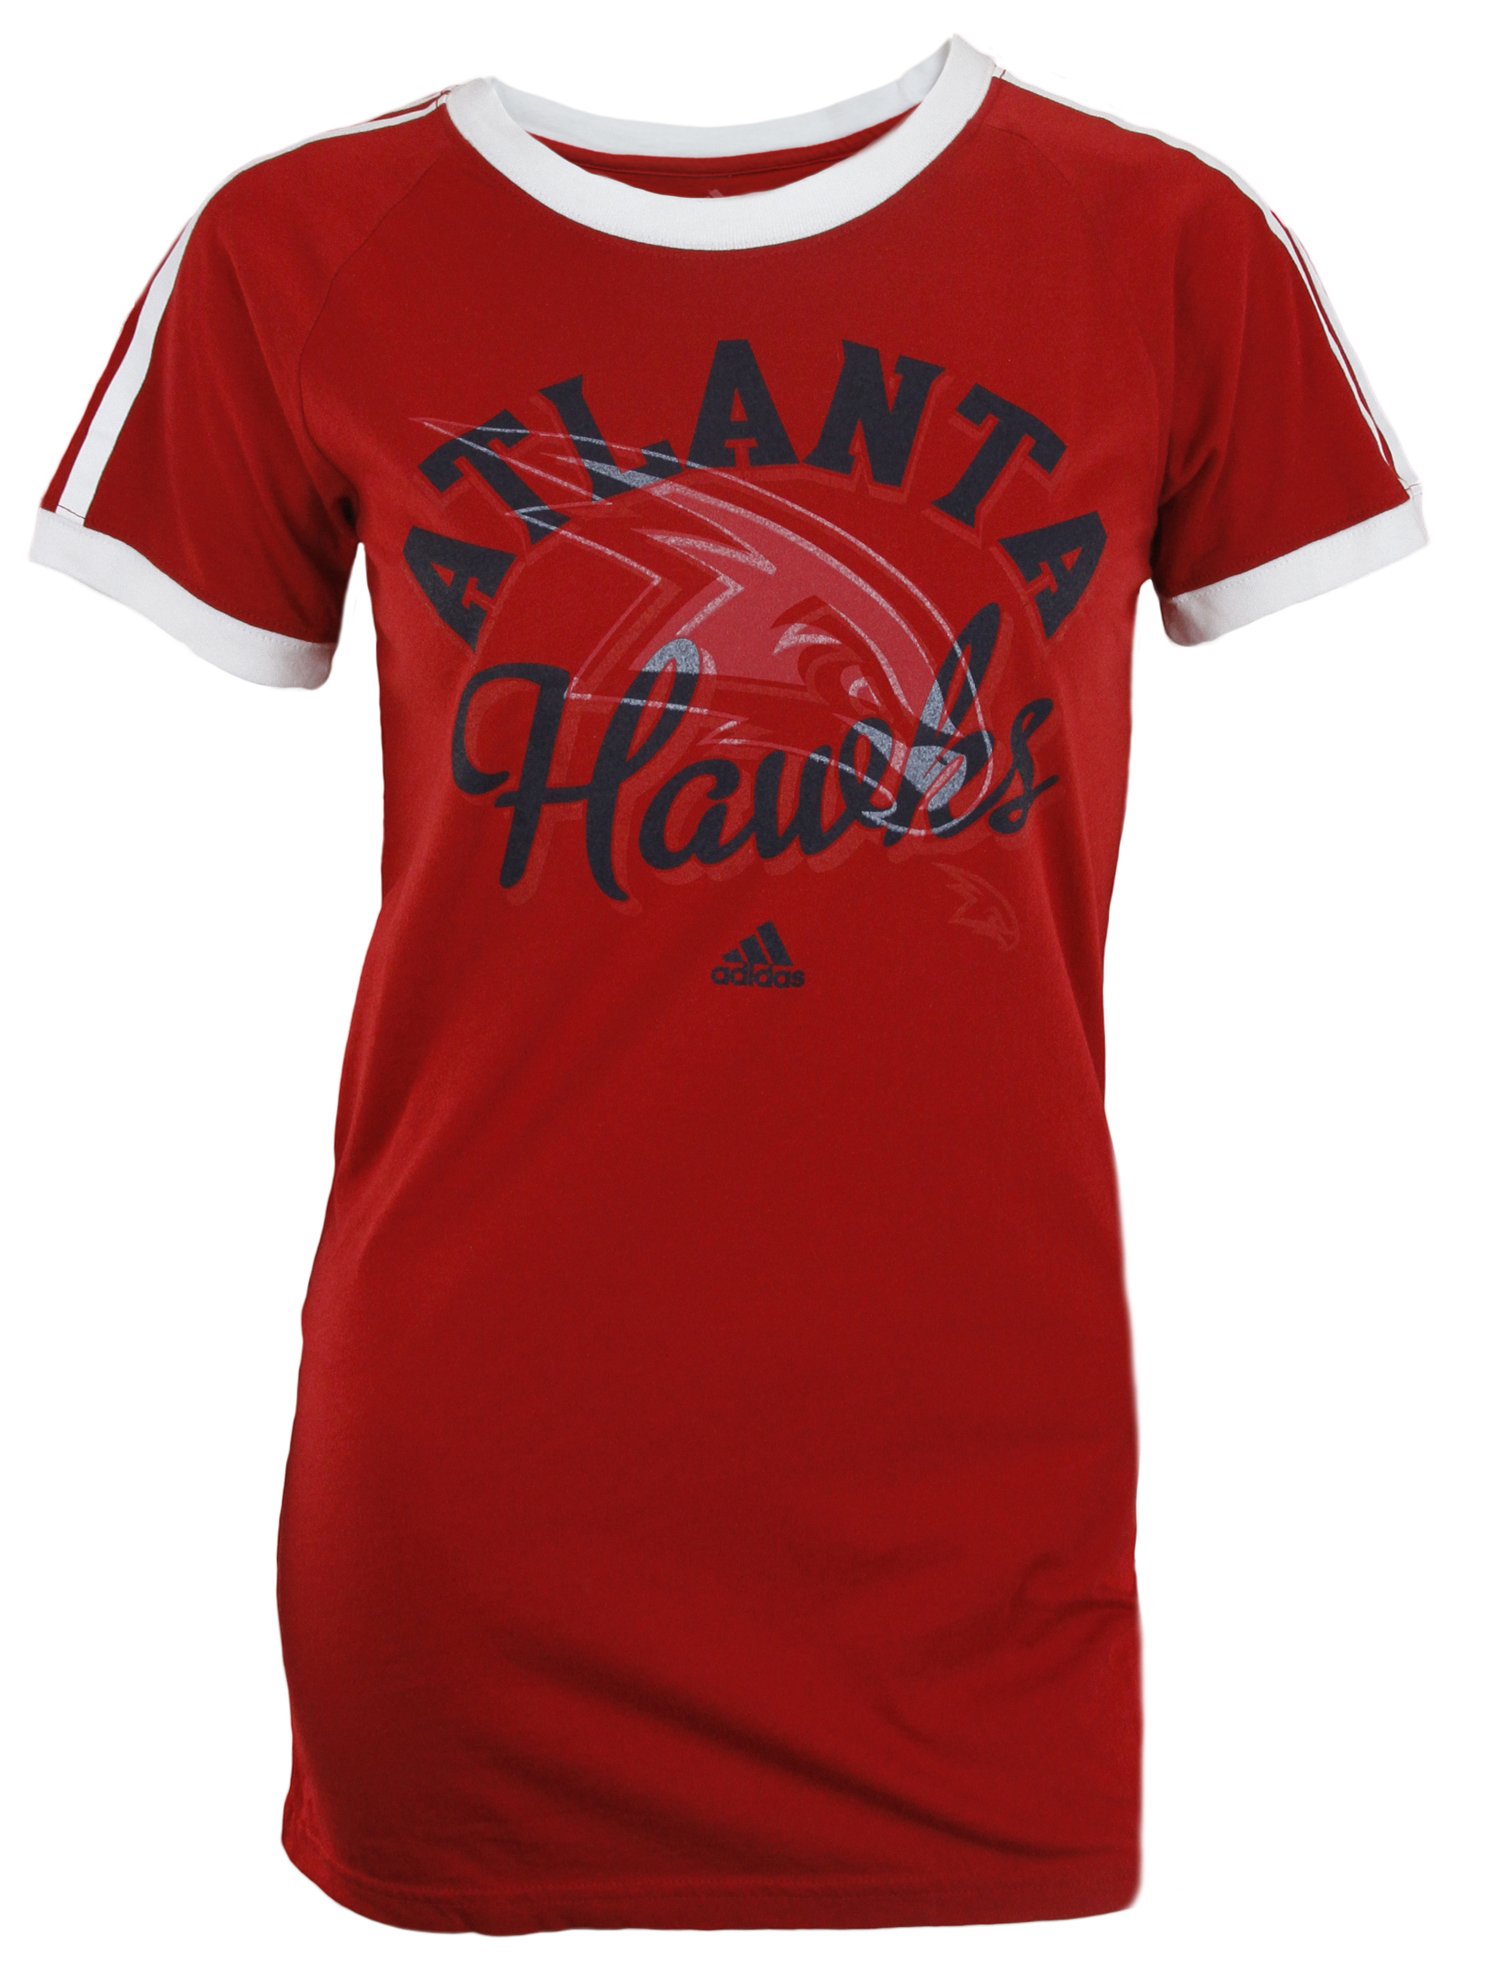 Adidas NBA Basketball Women's Atlanta Hawks Short Sleeve Raglan Tee Shirt - Red